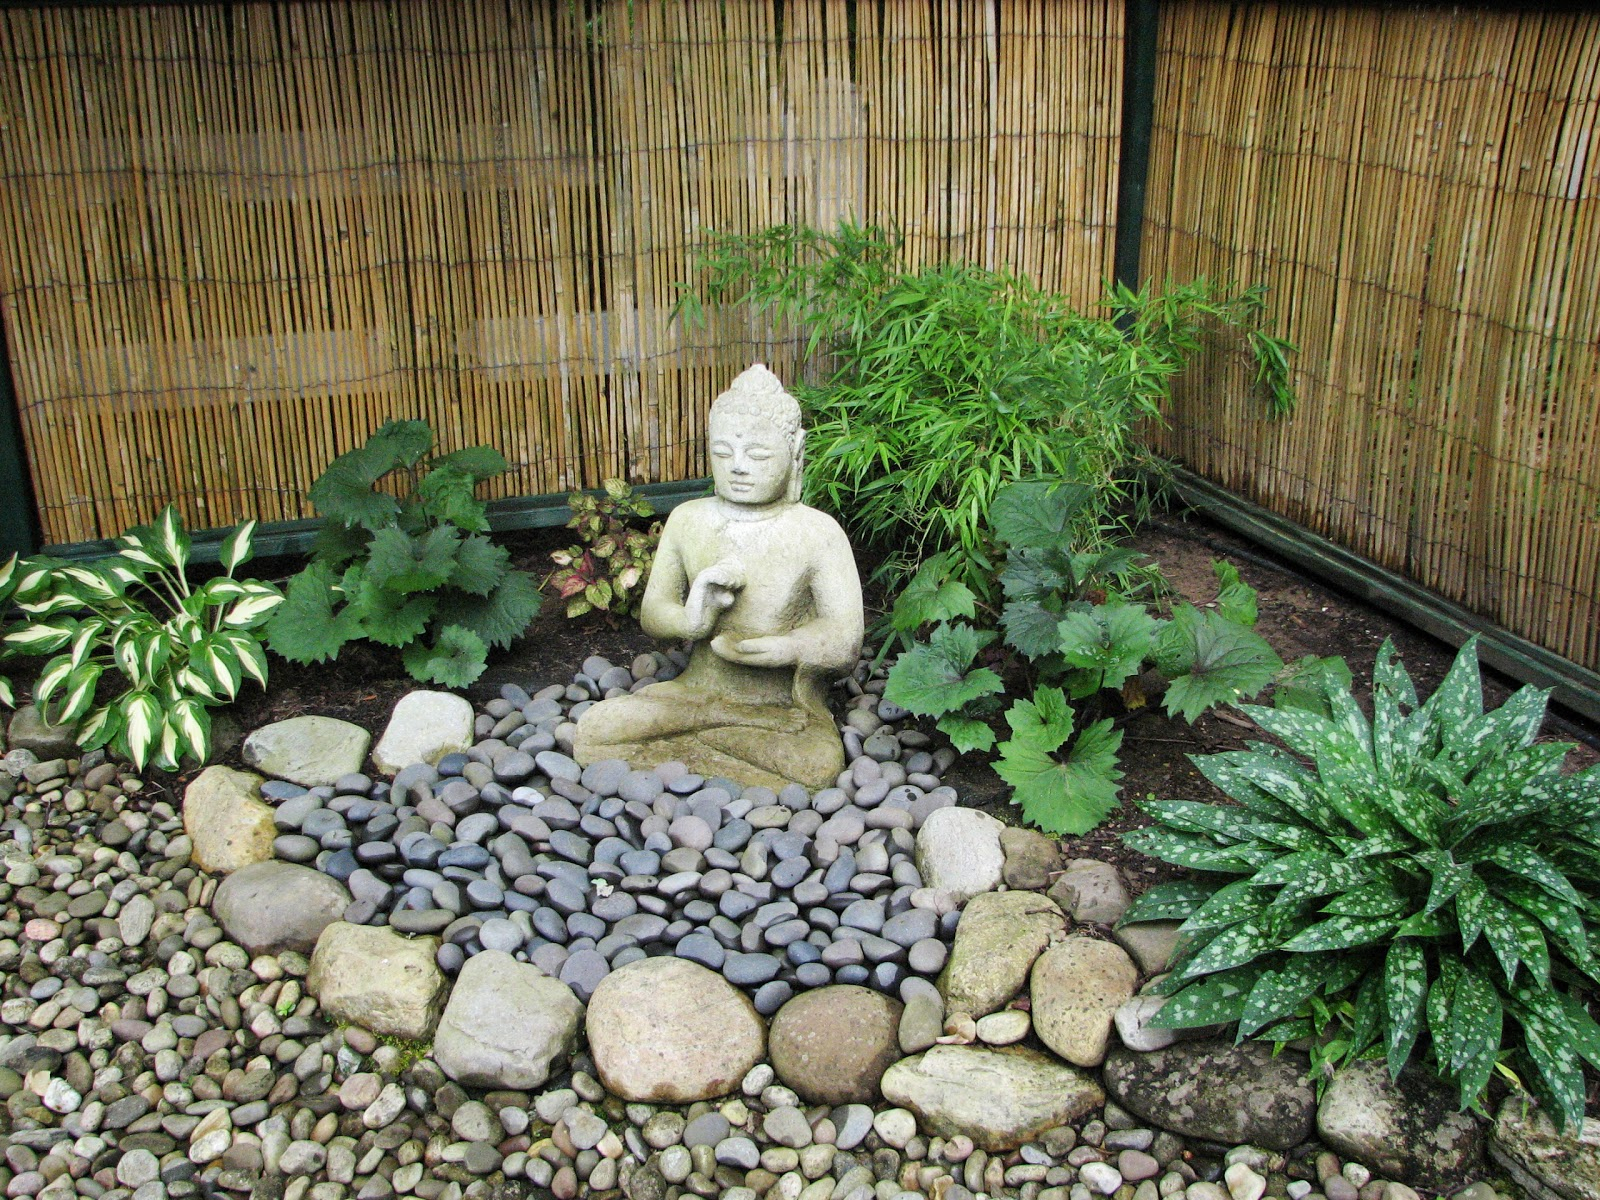 Jardin Zen Exterieur My Zen Garden Buddha and the Dunce